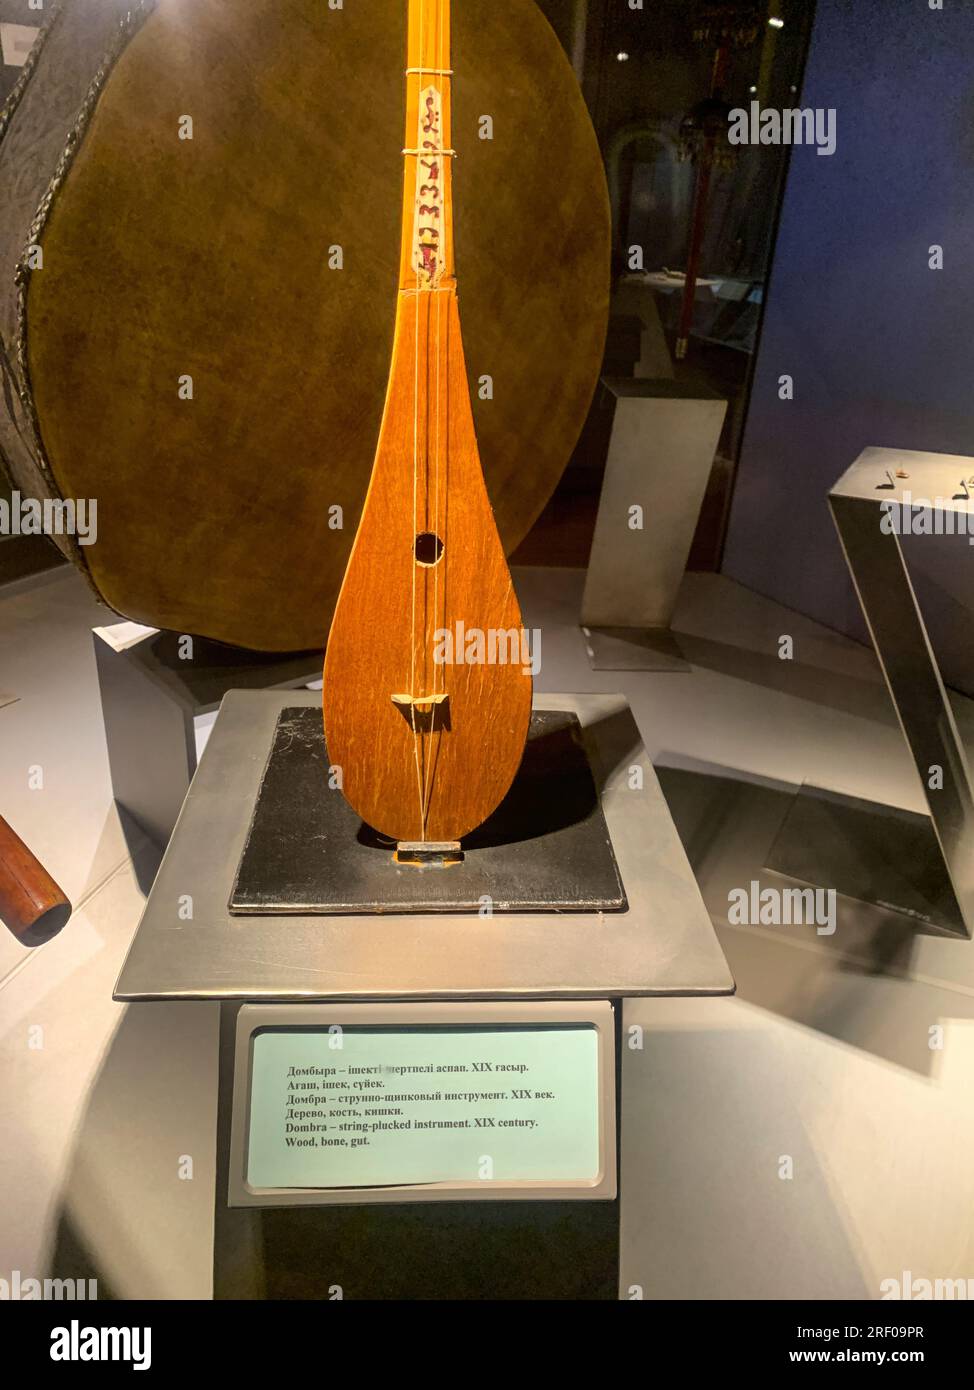 Kazakistan, Almaty. Dombra, un tradizionale strumento a corda kazako, nel Museo degli strumenti musicali popolari. Foto Stock